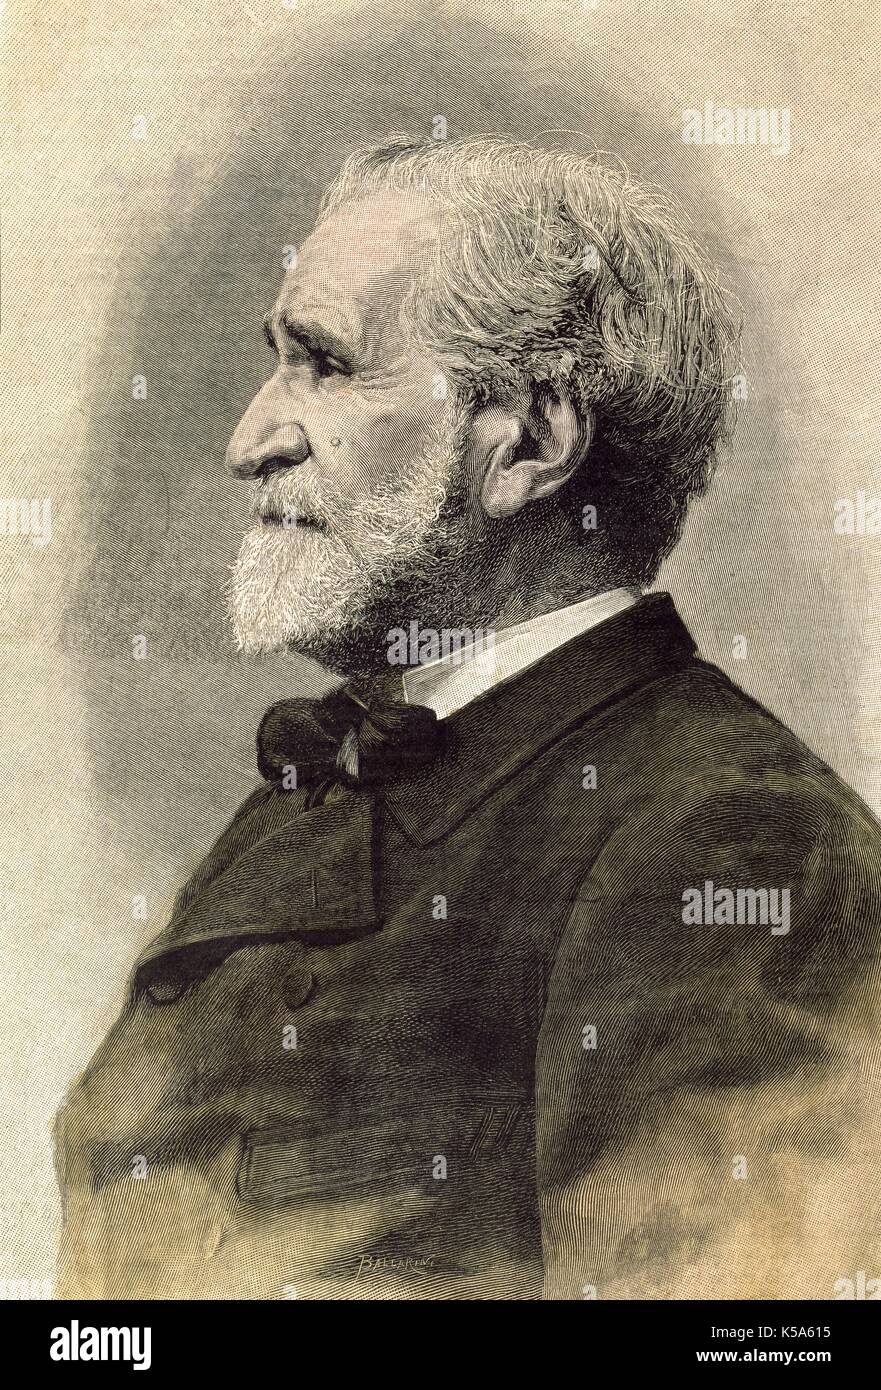 Giuseppe Verdi (1813-1901). Italian composer. Engraving, 1893. Stock Photo